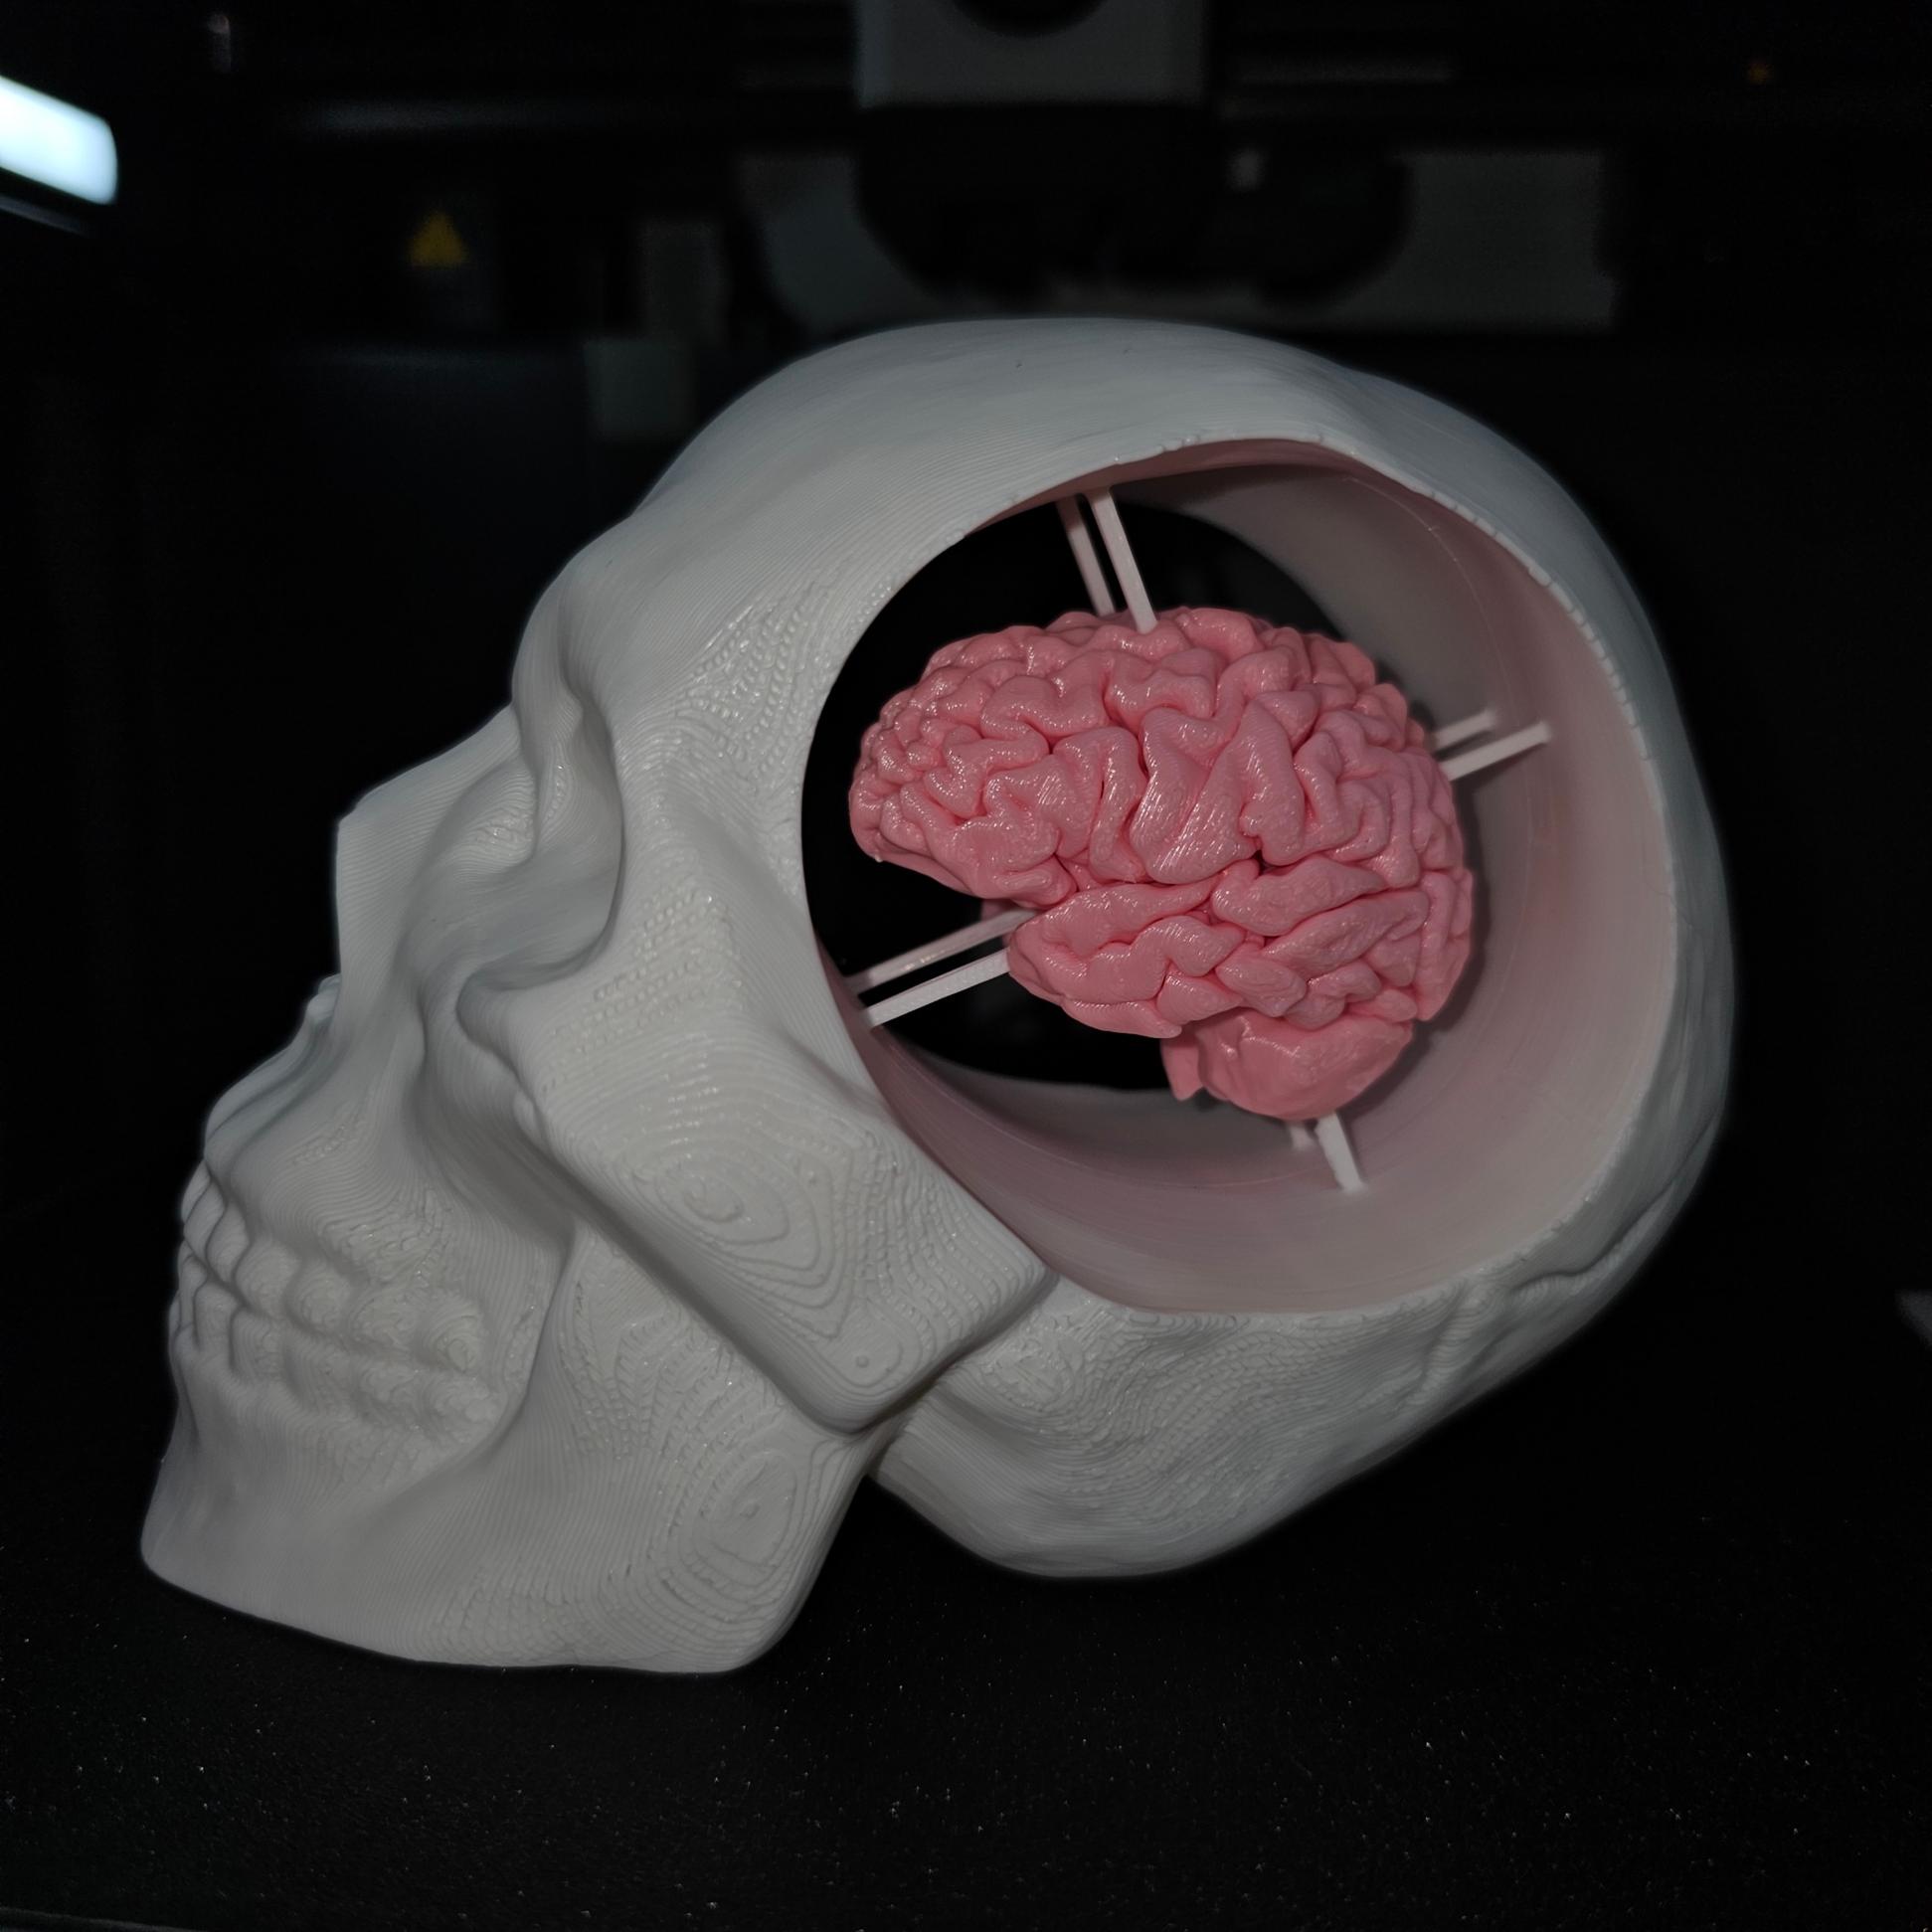 Skull with Brain 3d model